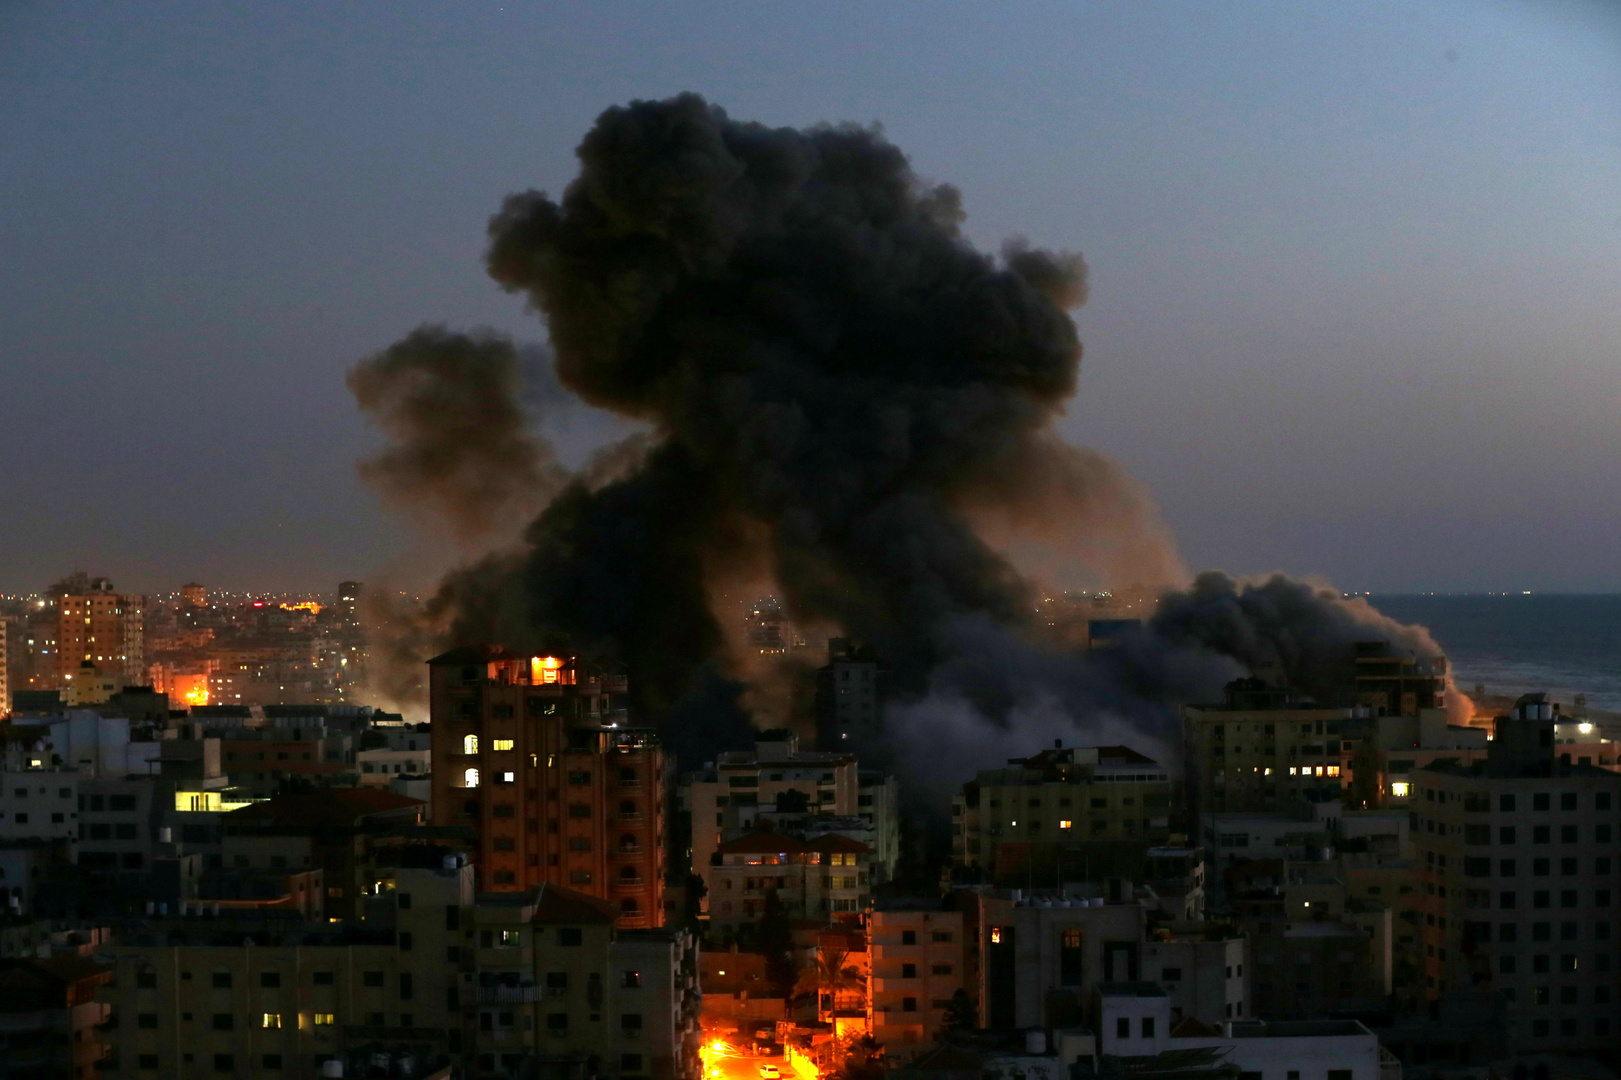 إسرائيل تستأنف الرحلات الجوية بعد توقف قصير بسبب القصف من قطاع غزة